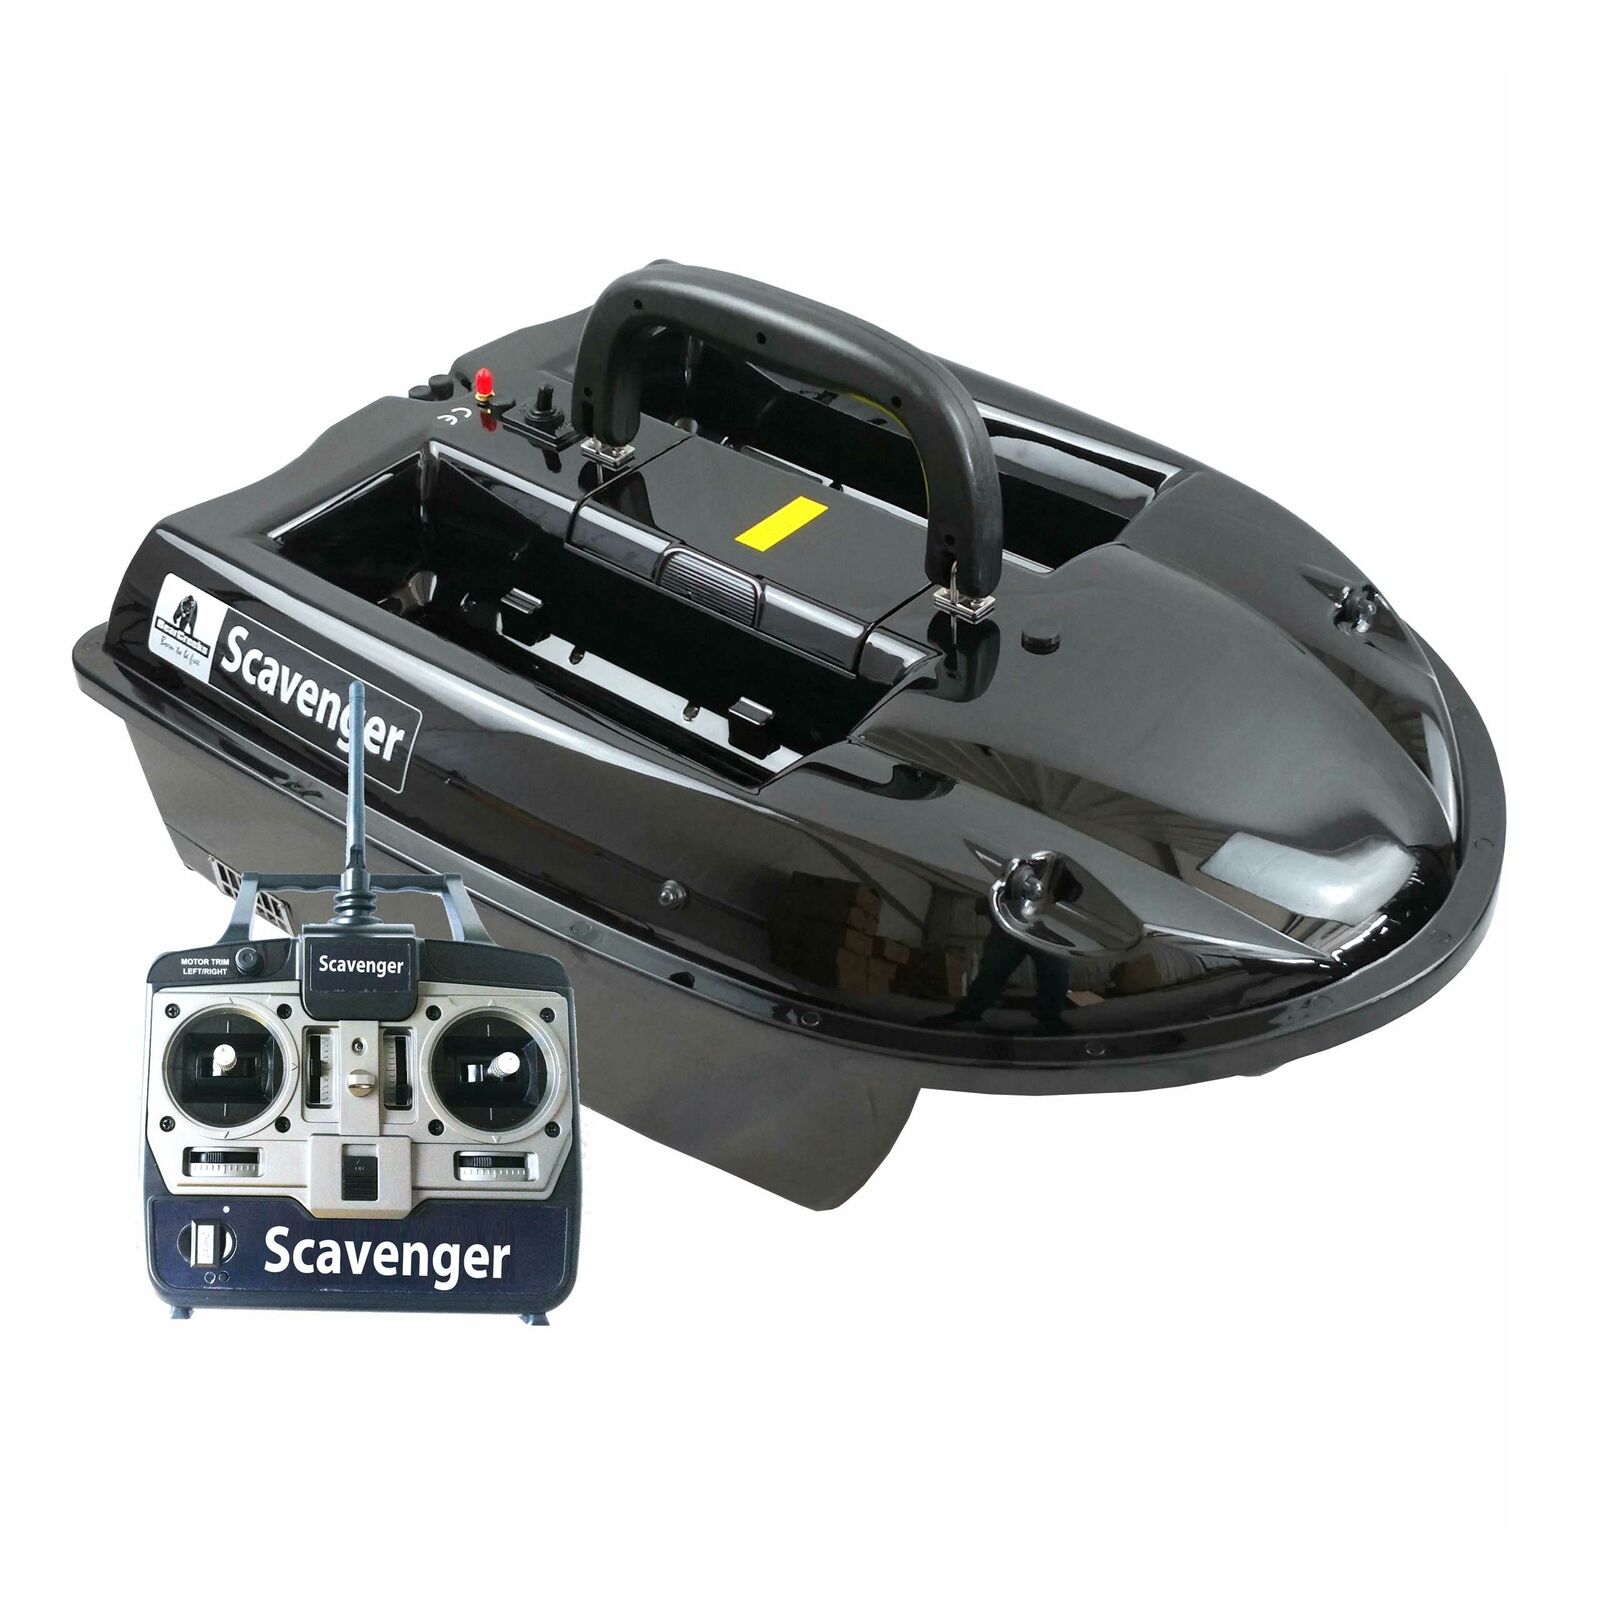  Scavenger Futterboot mit Bleibatterieversion | 2.4GHz Funksystem | Optionale Fischfinder